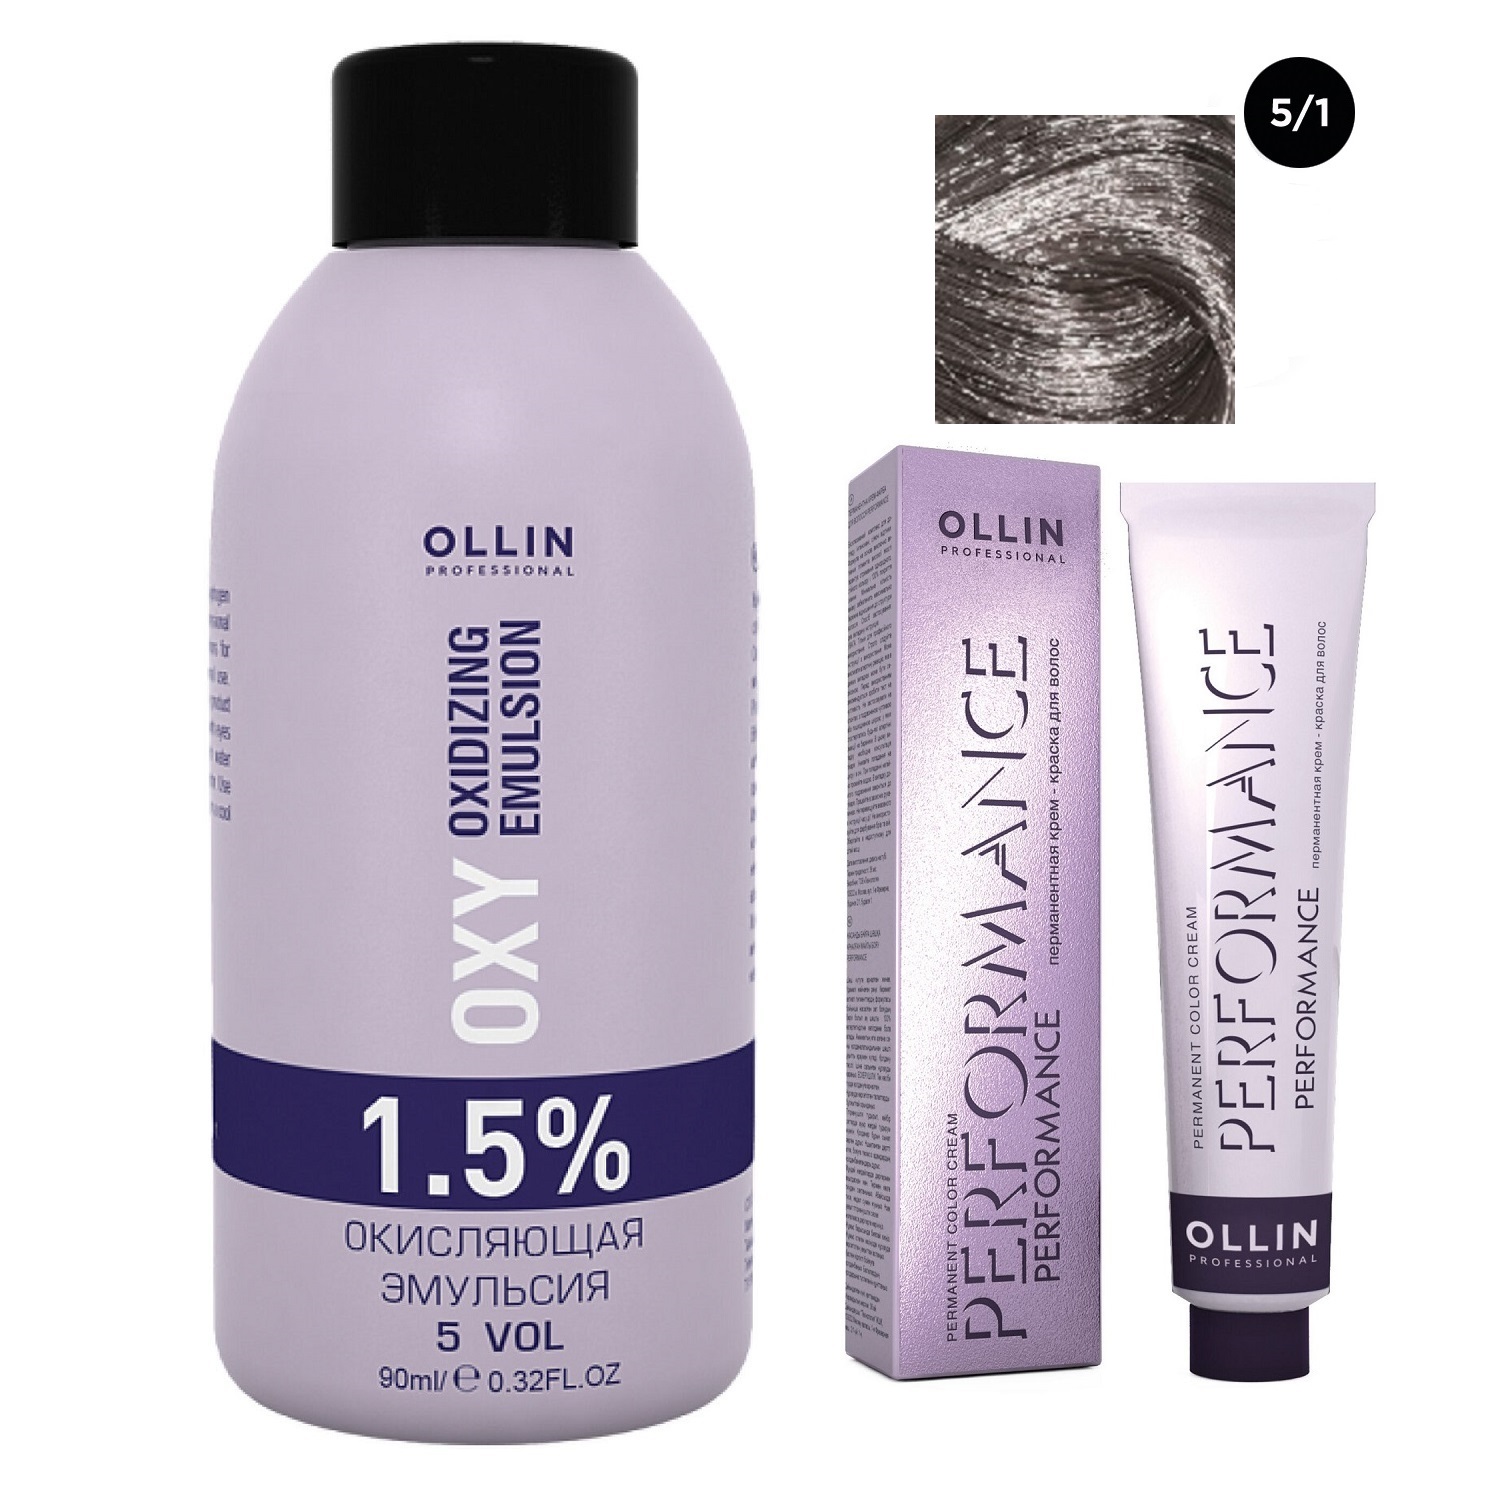 Ollin Professional Набор Перманентная крем-краска для волос Ollin Performance оттенок 5/1 светлый шатен пепельный 60 мл + Окисляющая эмульсия Oxy 1,5% 90 мл (Ollin Professional, Performance)